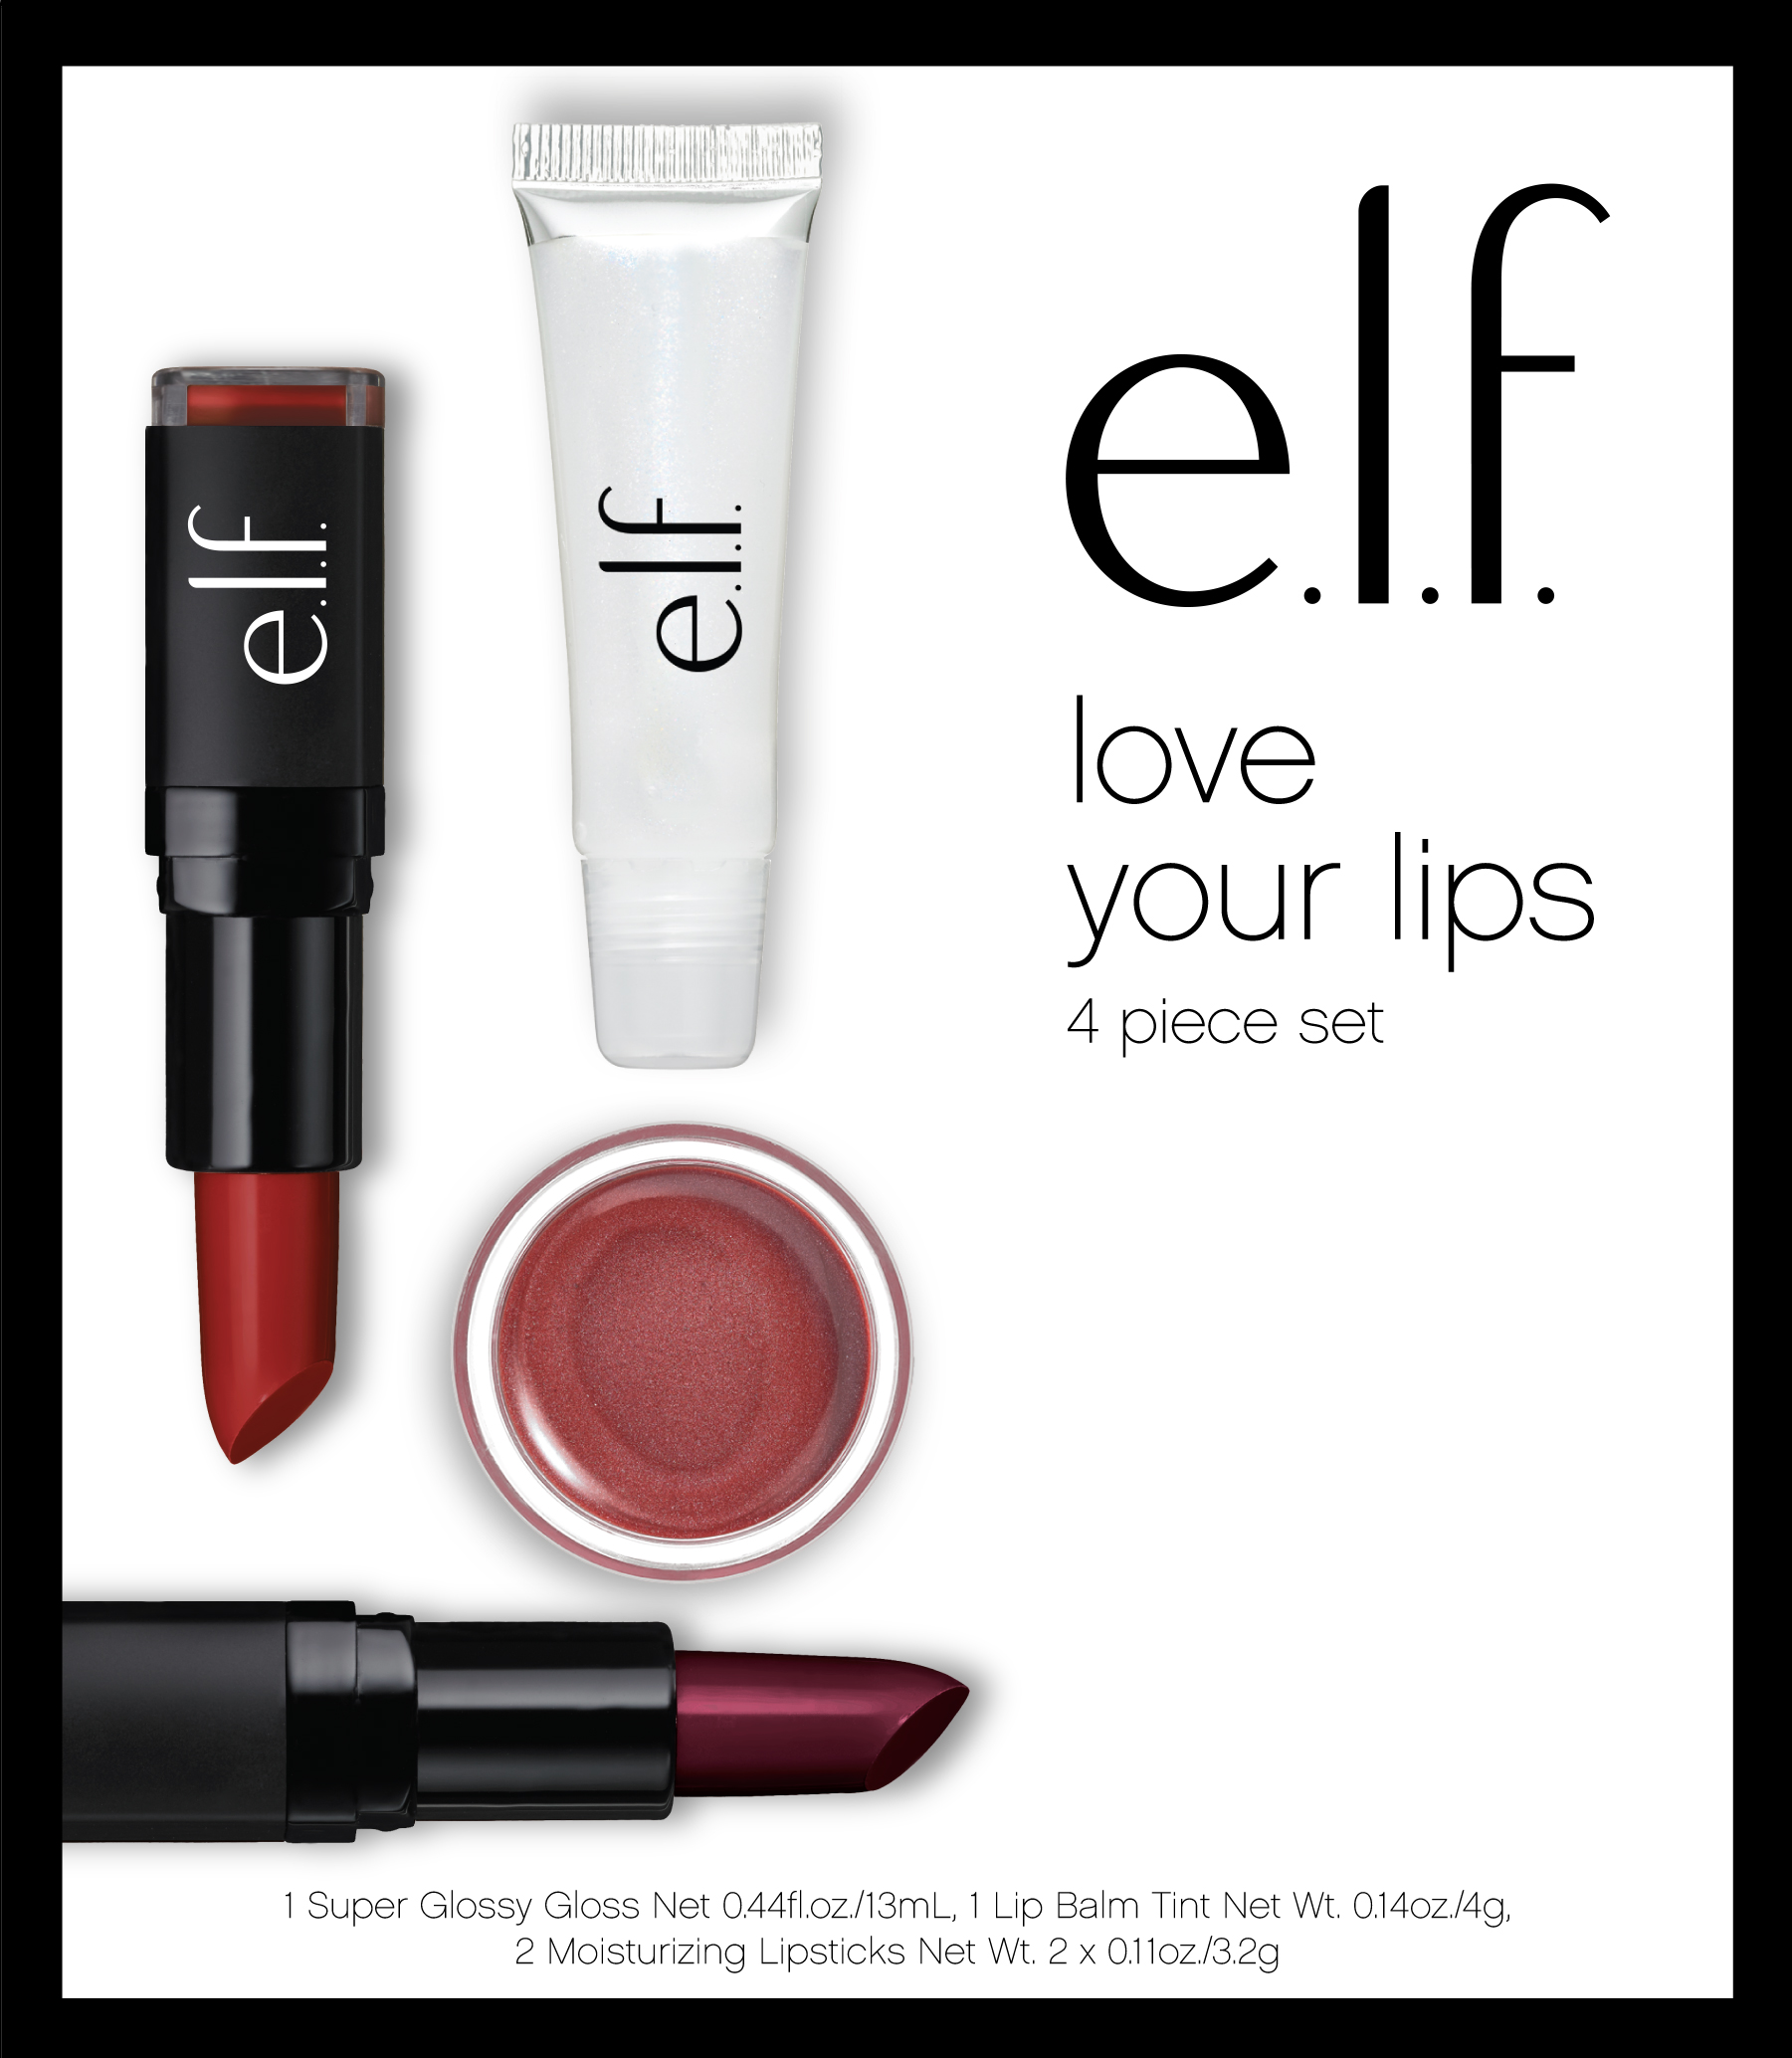 E.l.f. Love Your Lips Box